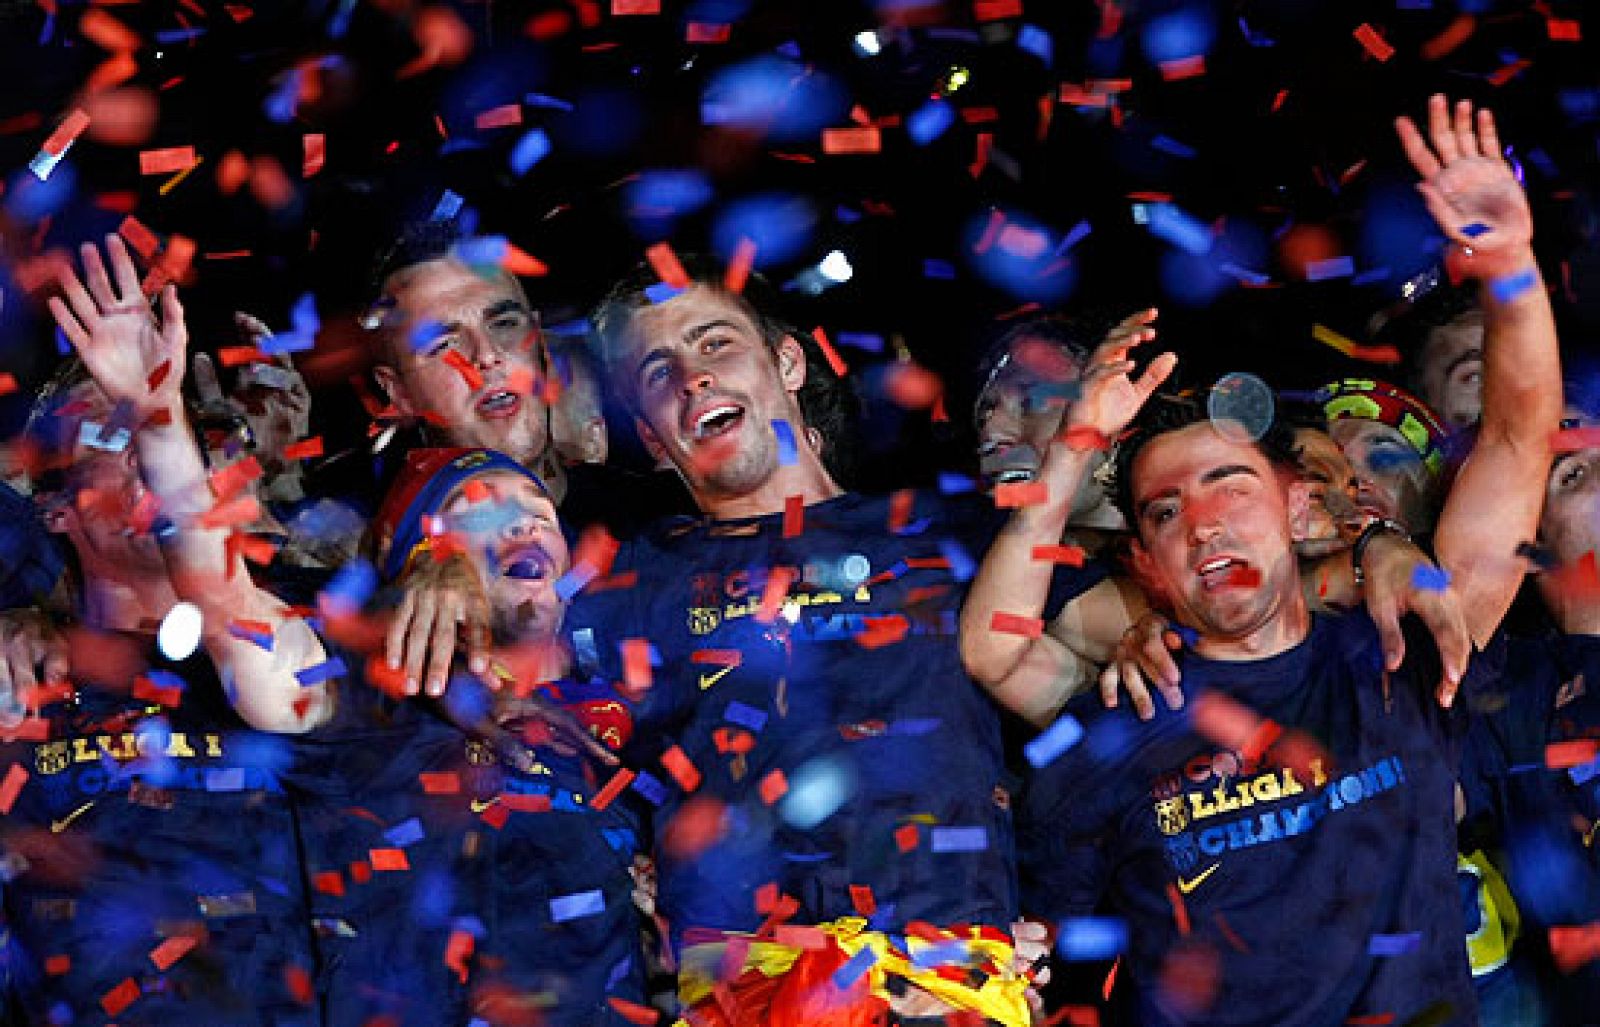 La canción del Coldplay ha sido el amuleto de la suerte de este Barça.